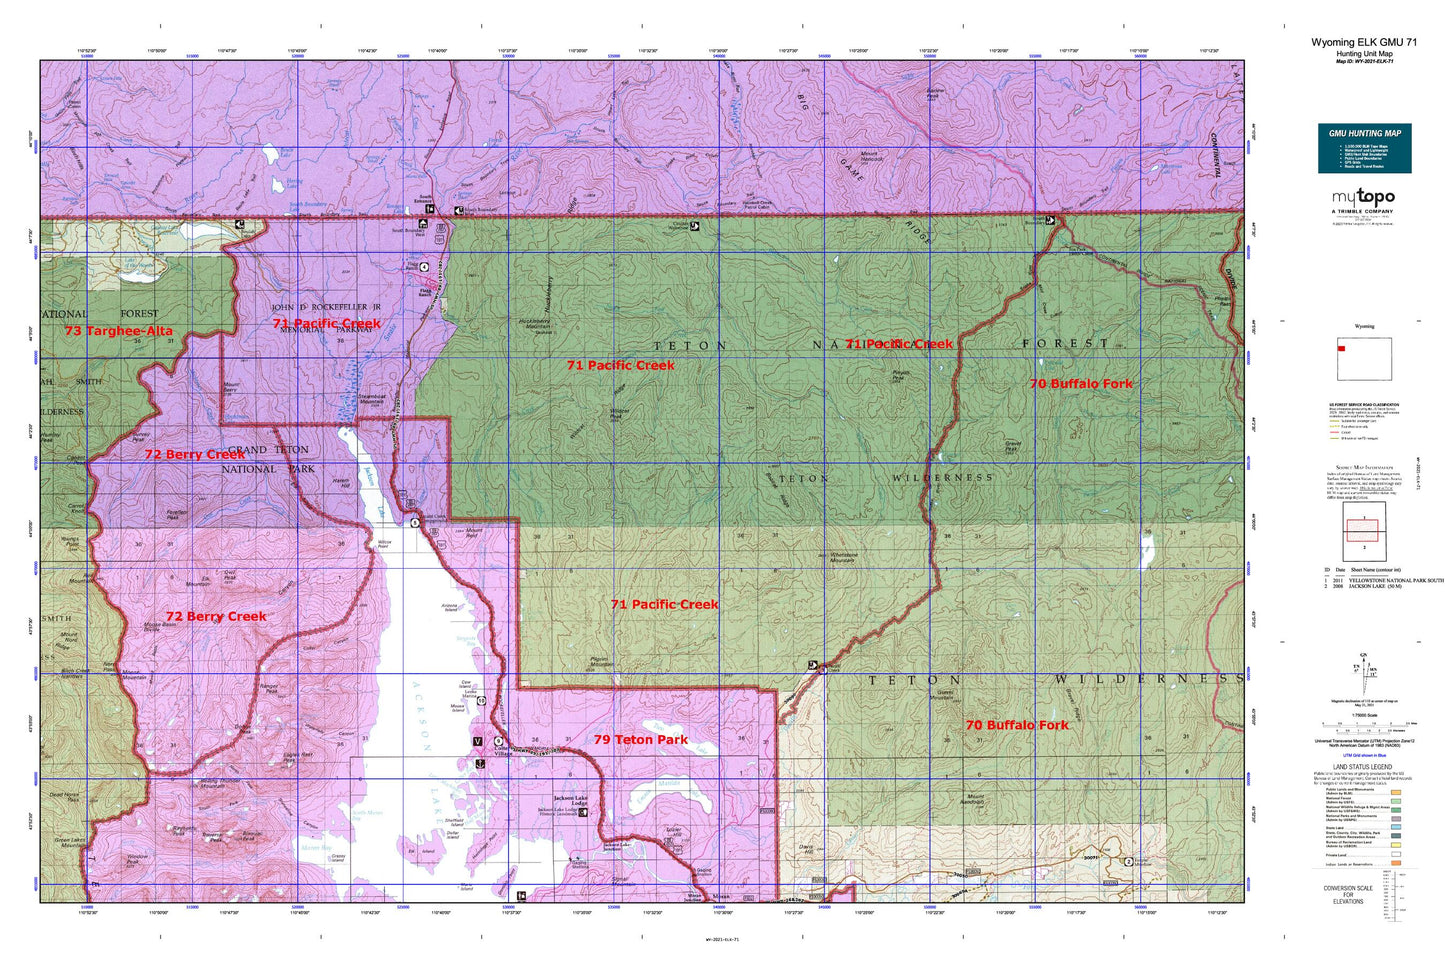 Wyoming Elk GMU 71 Map Image